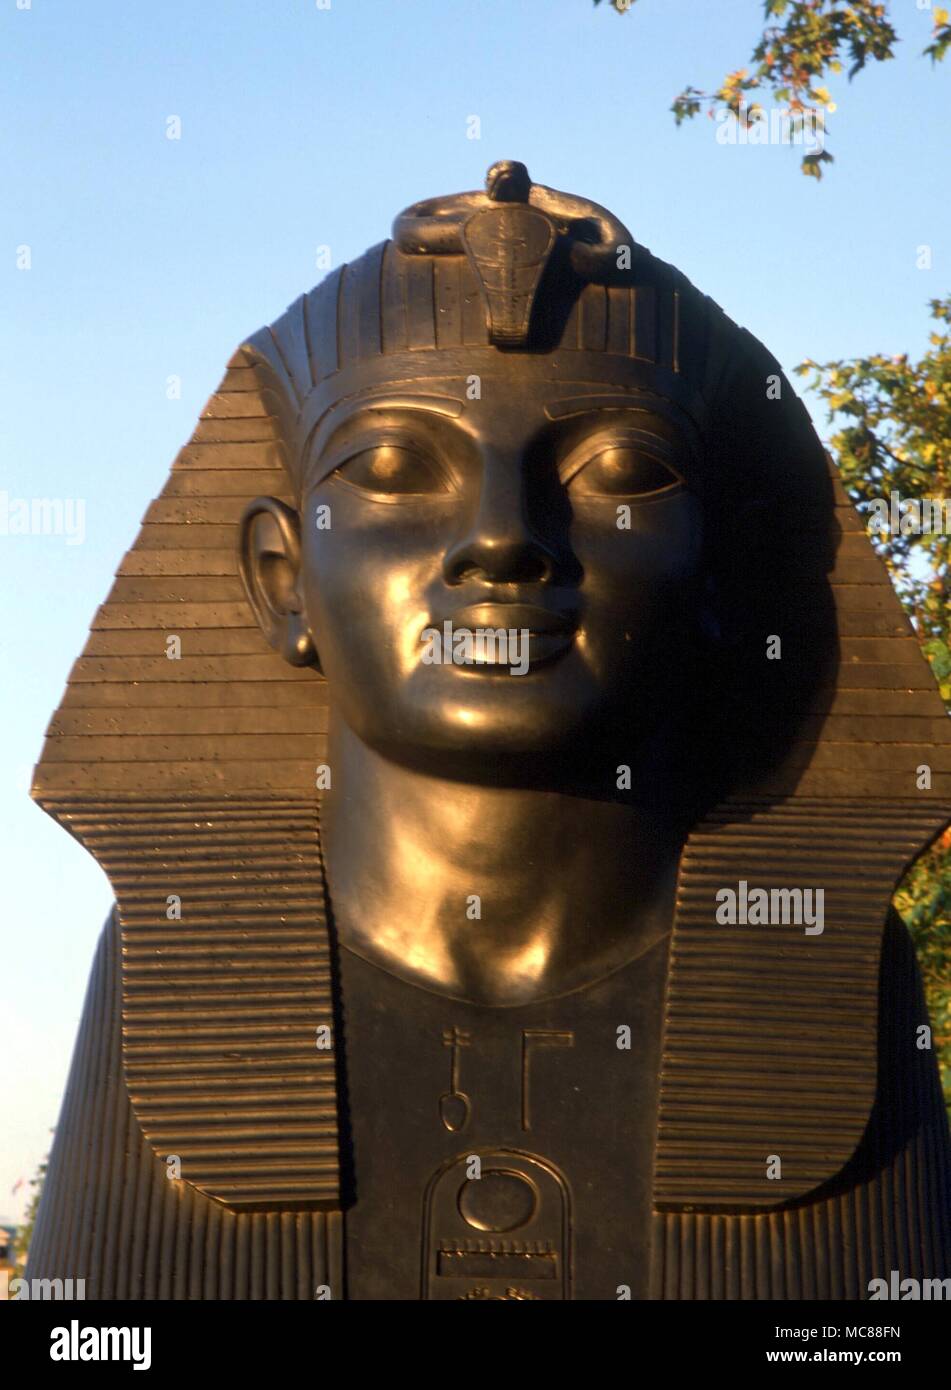 Tiere - London - Cleopatra's Needle Kopf von einem der beiden sphingen auf Cleopatra's Needle (Damm) bei Sonnenaufgang Stockfoto